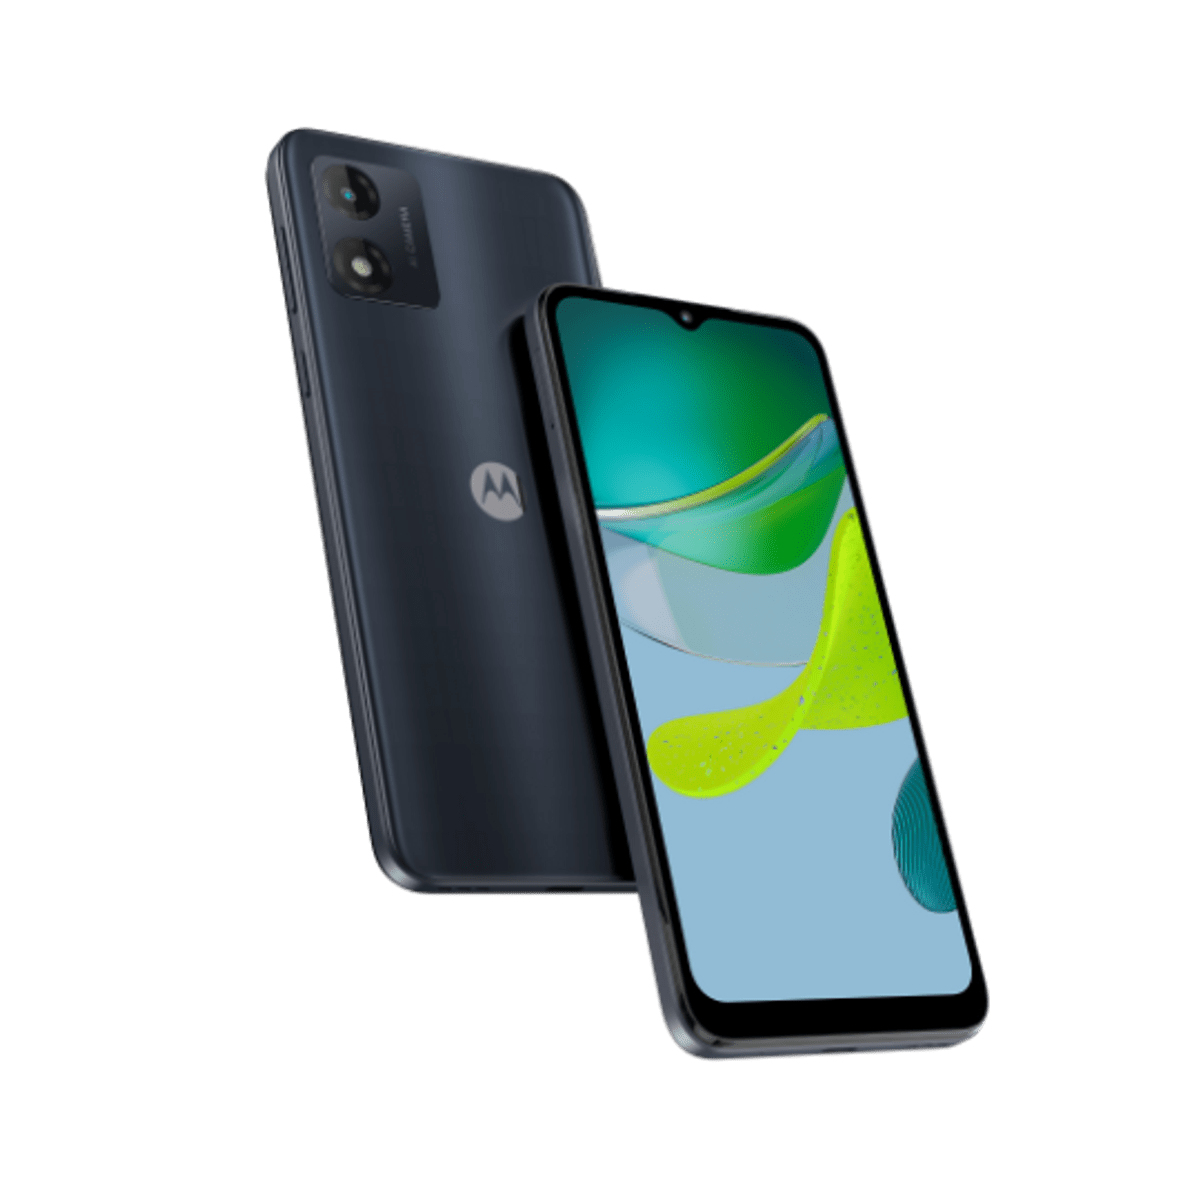 Motorola - Smartphones           Moto E13 6.5in 64gb Black           Lte Android                         Paxt0028gb